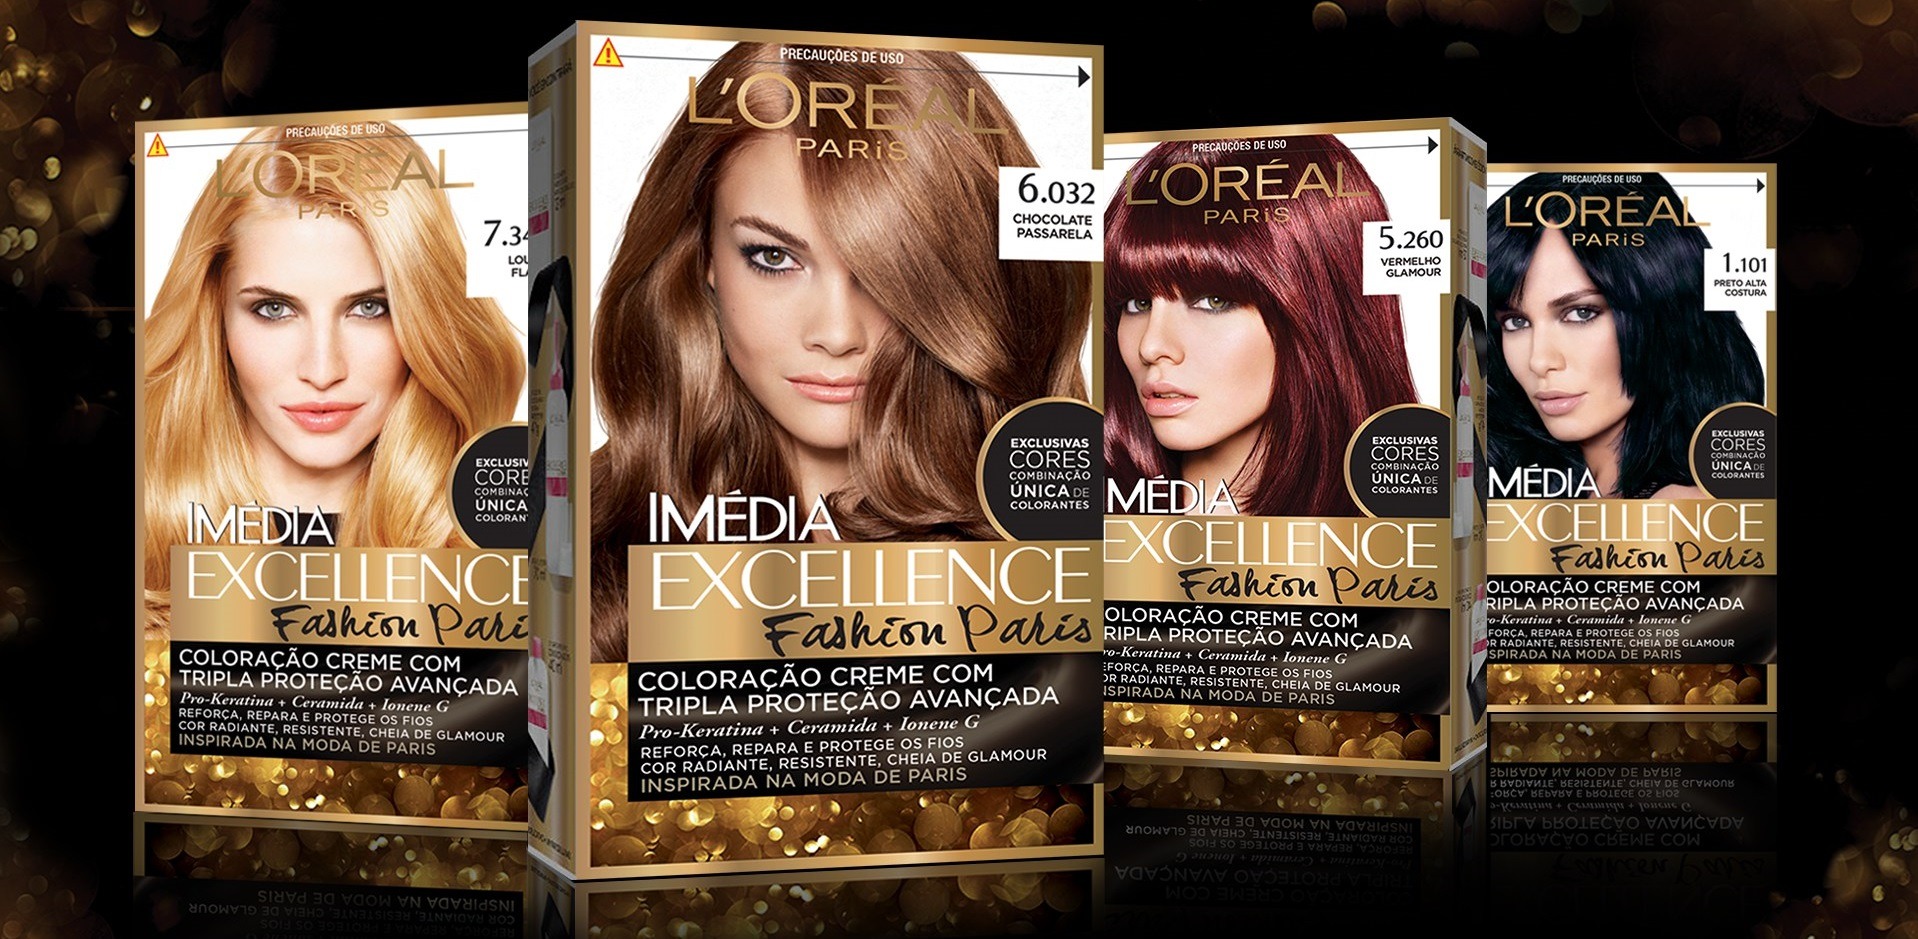 کیت رنگ مو لورآل مدل Excellence شماره 5